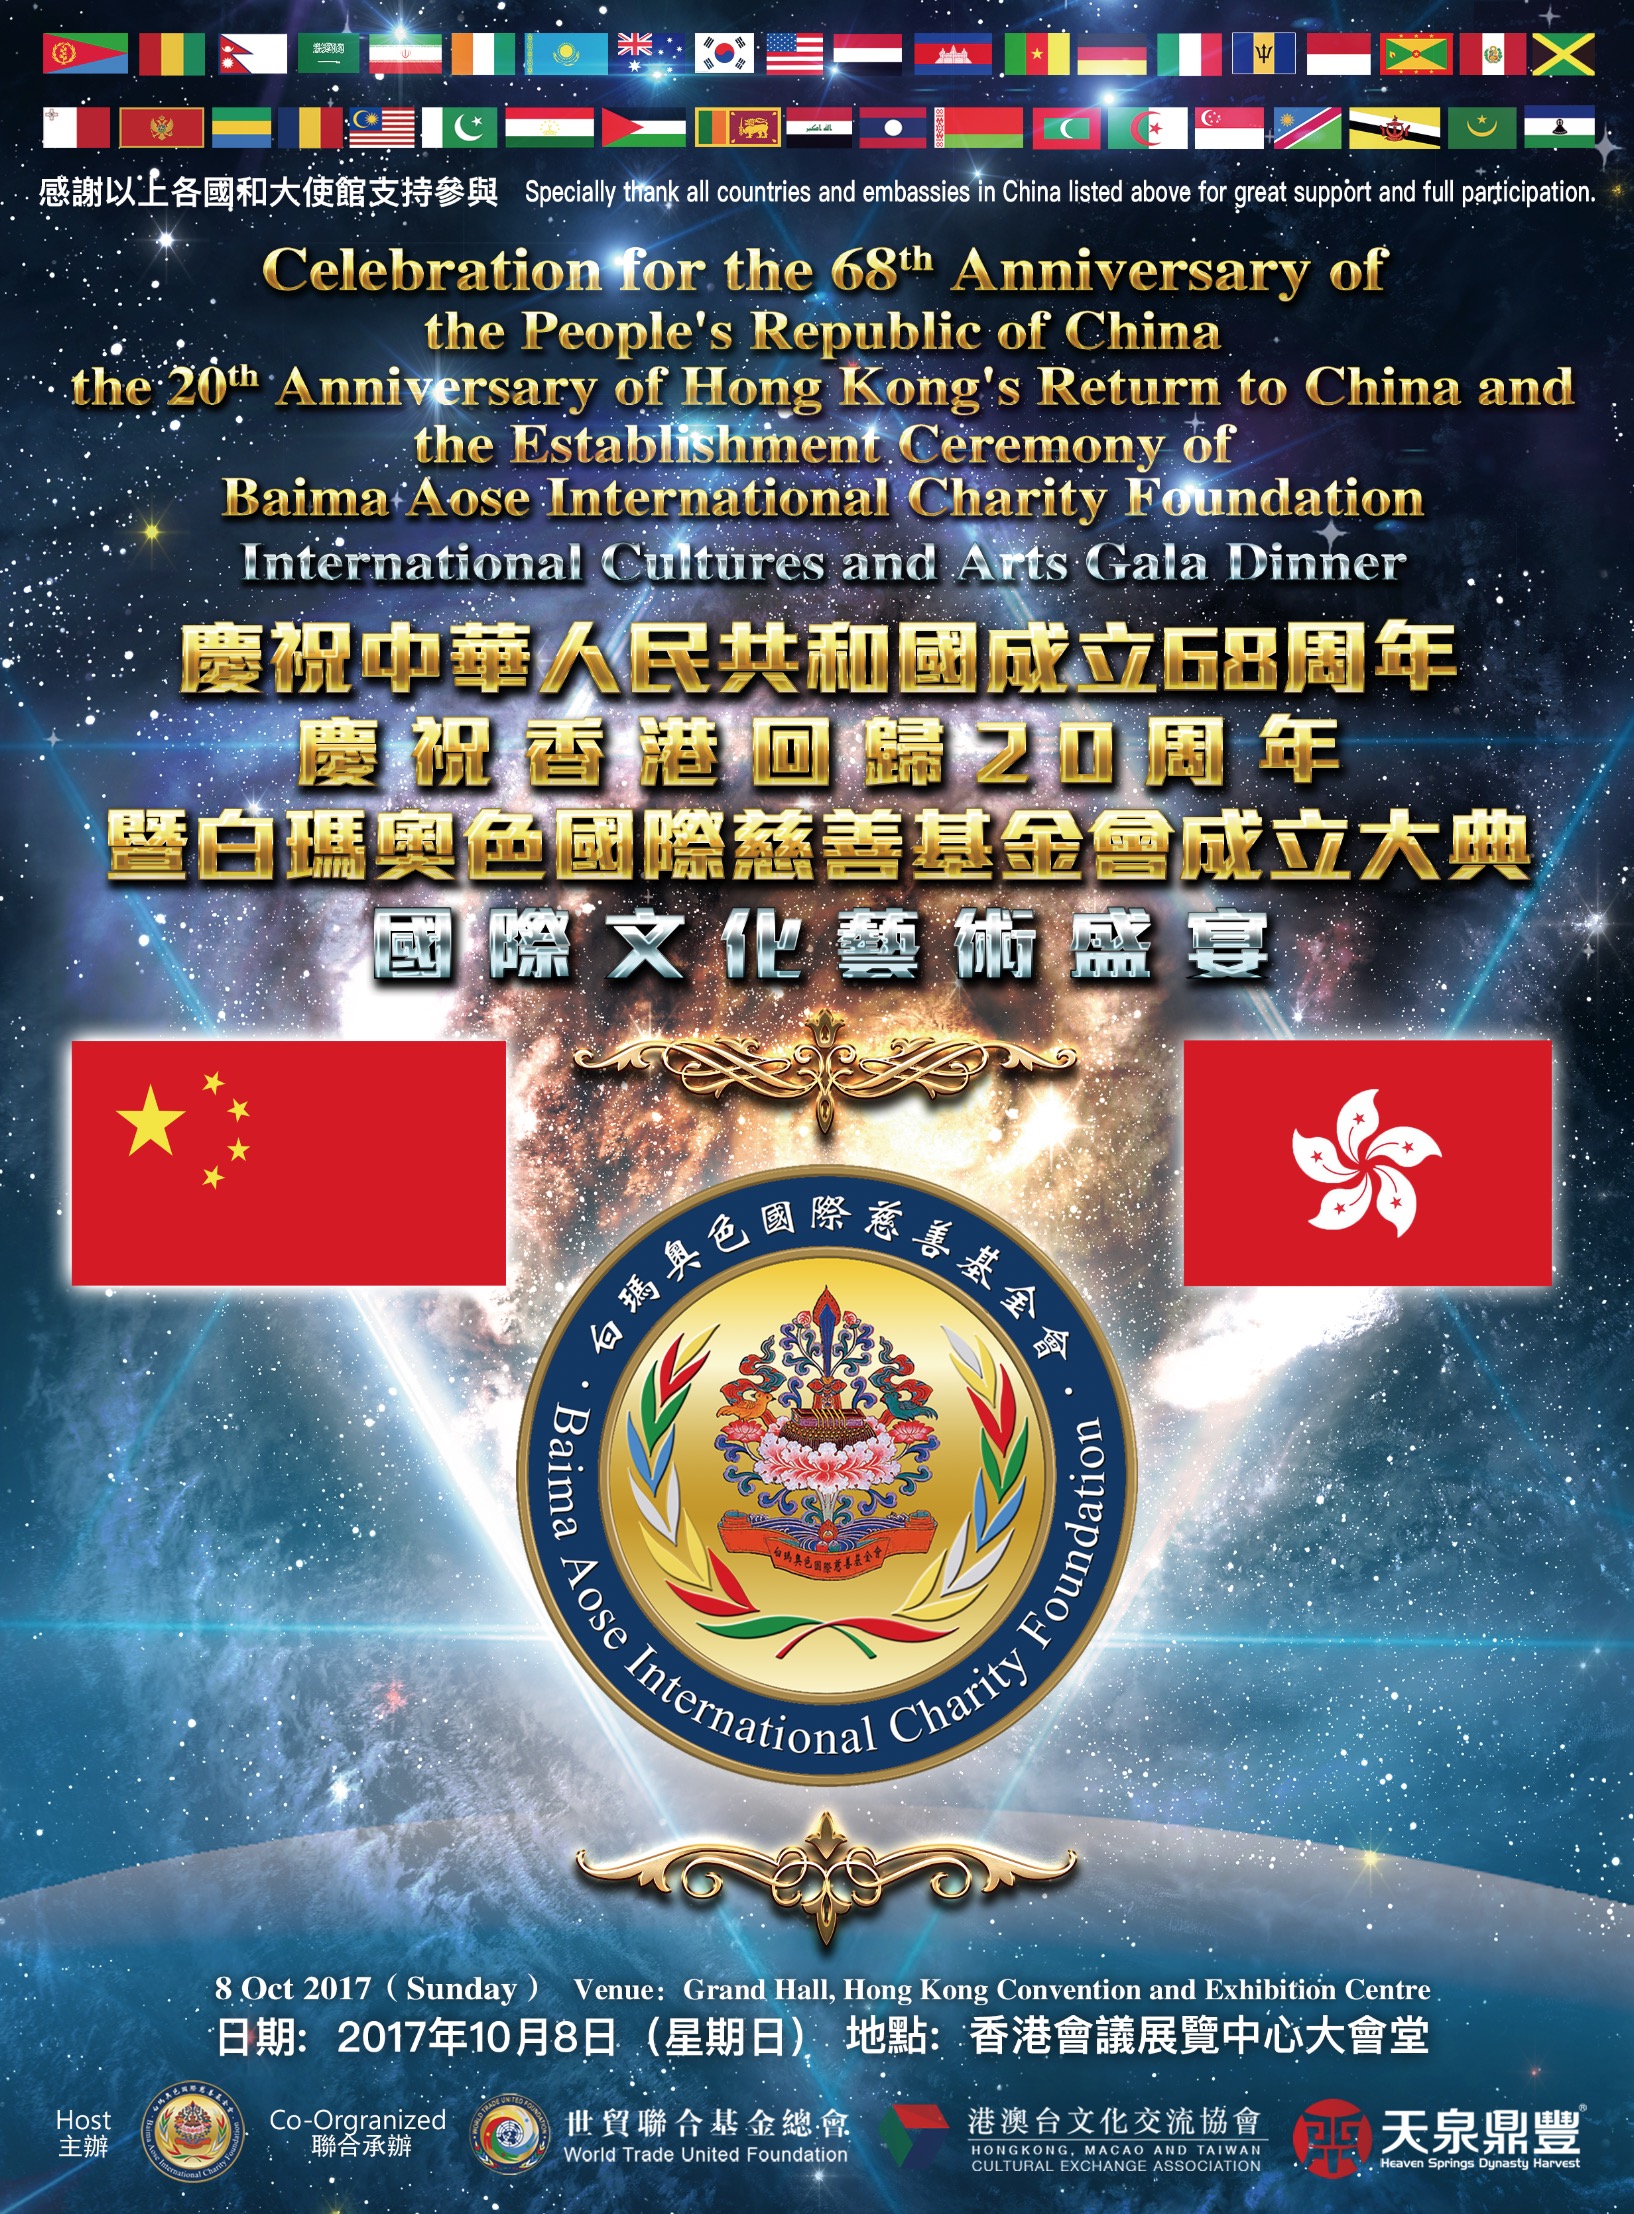 慶祝中華人民共和國國慶六十八周年、慶祝香港回歸20周年 暨
白瑪奧色國際慈善基金會成立大典~国际文化艺术盛宴
